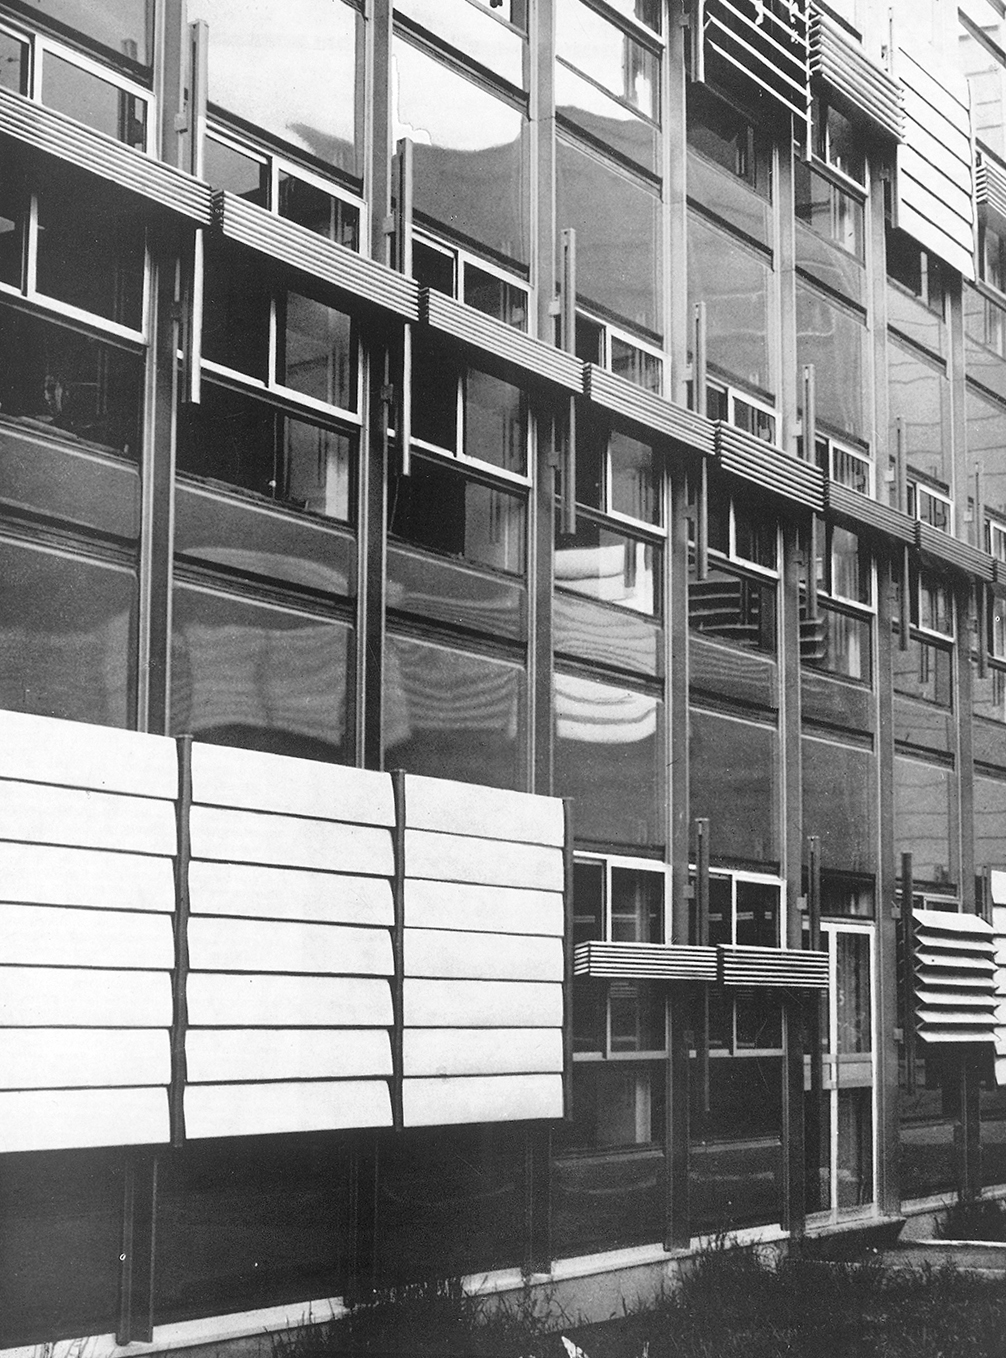 Cité scolaire de La Dullague, Béziers (D. Badani, P. Roux-Dorlut, arch., 1964). Panneaux de façade brise-soleil à lames orientables conçus par Jean Prouvé, c. 1965.